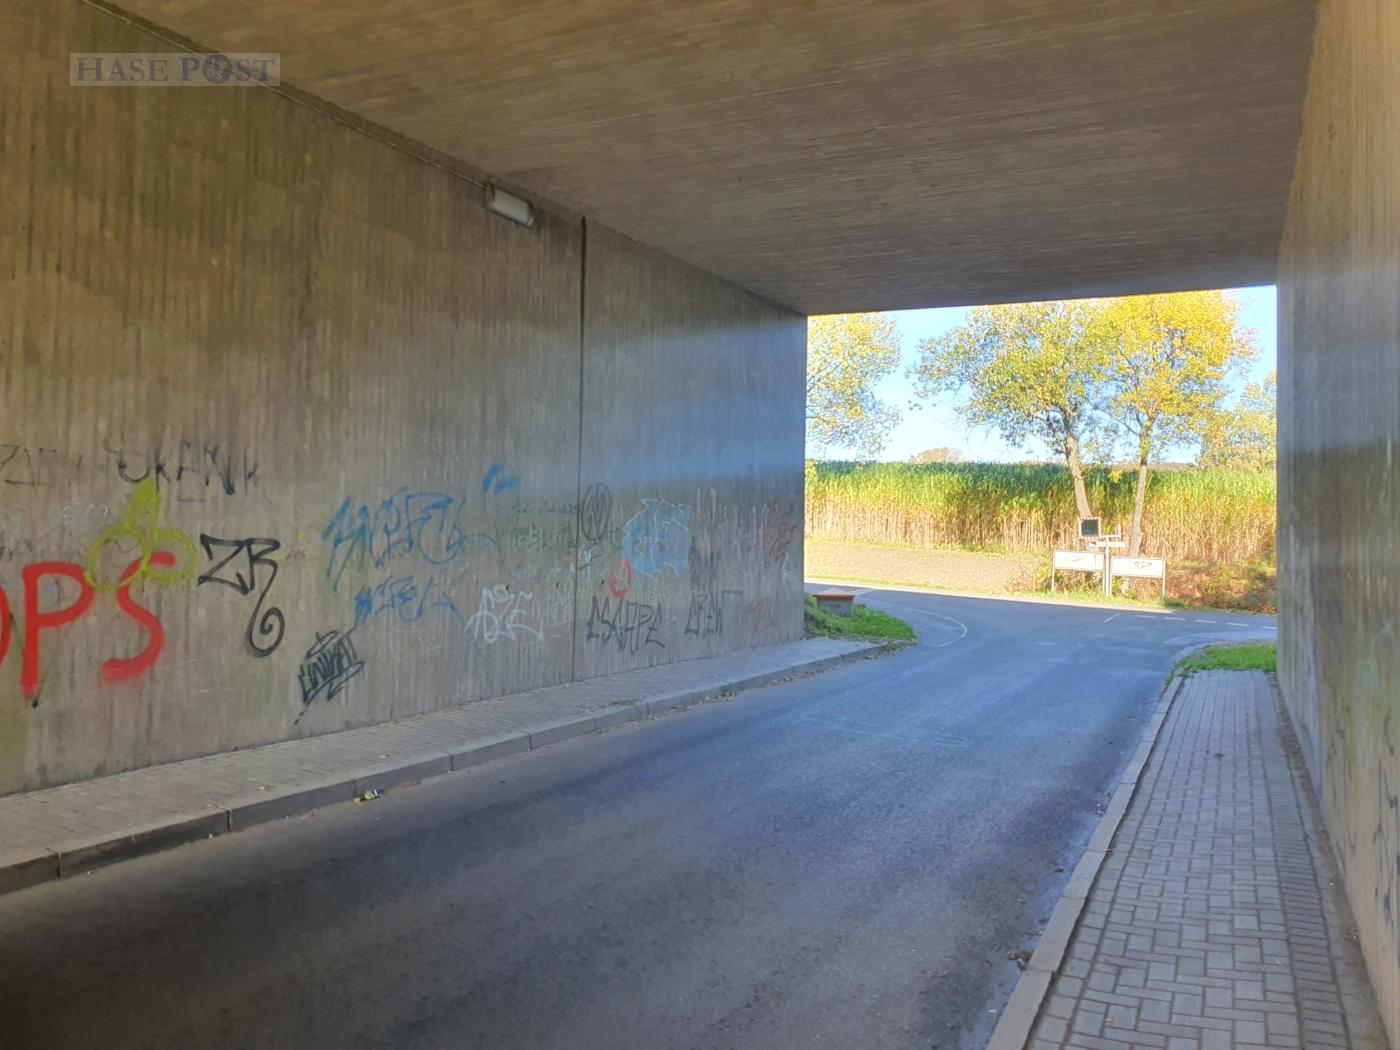 Kinder bei Farbschmiererei von Polizei erwischt – Illegales Graffiti an der Autobahn